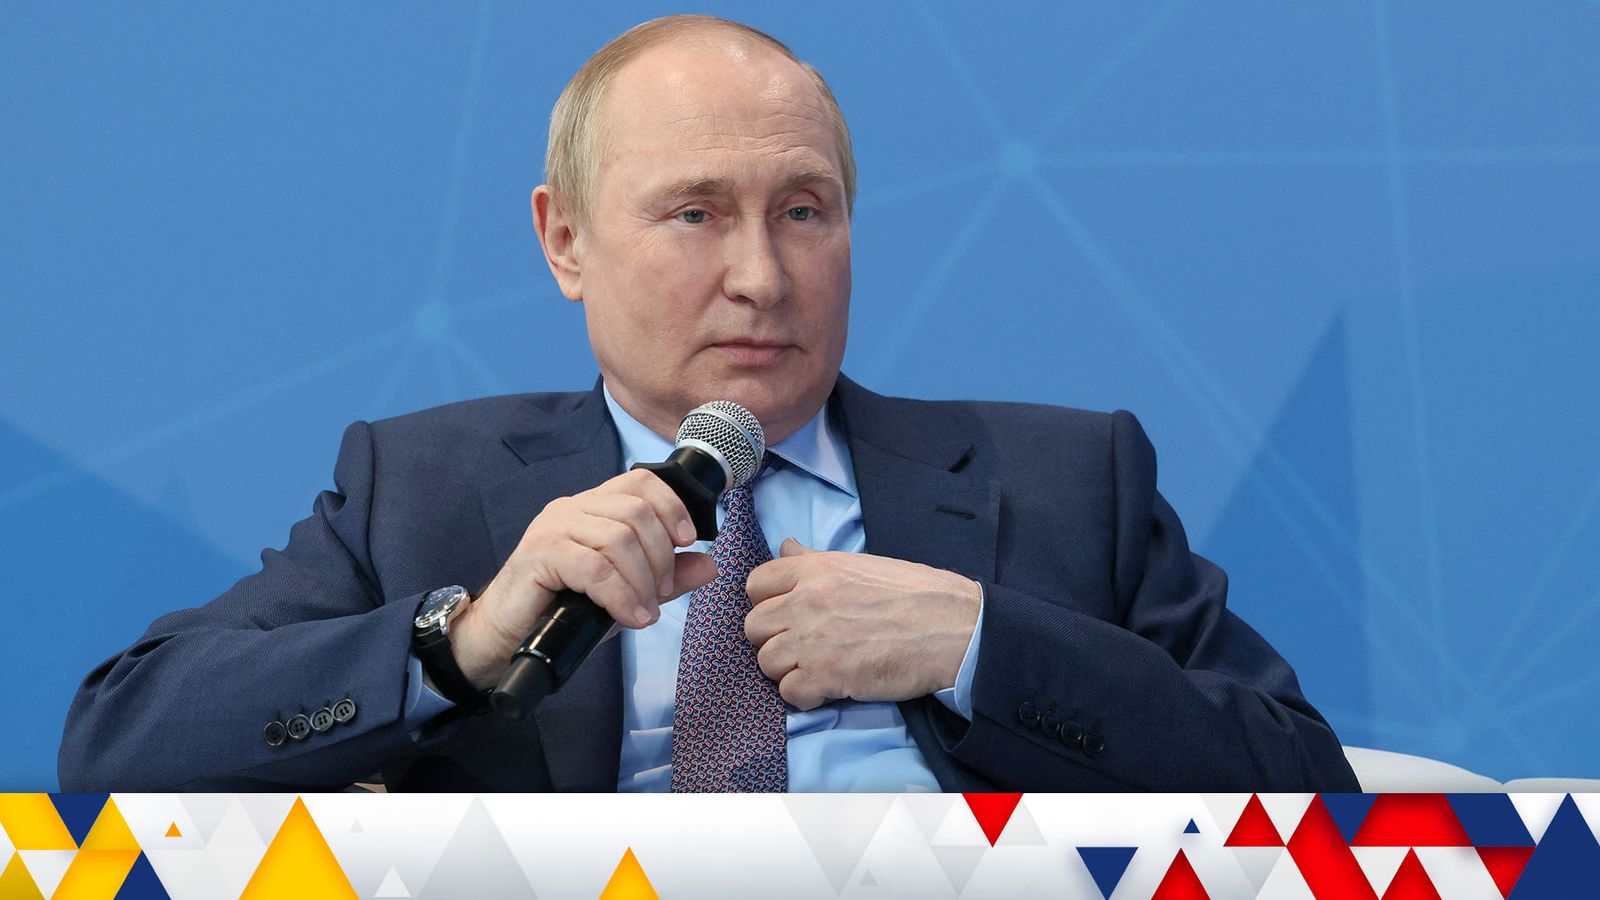 Topless western leaders would look disgusting: Putin